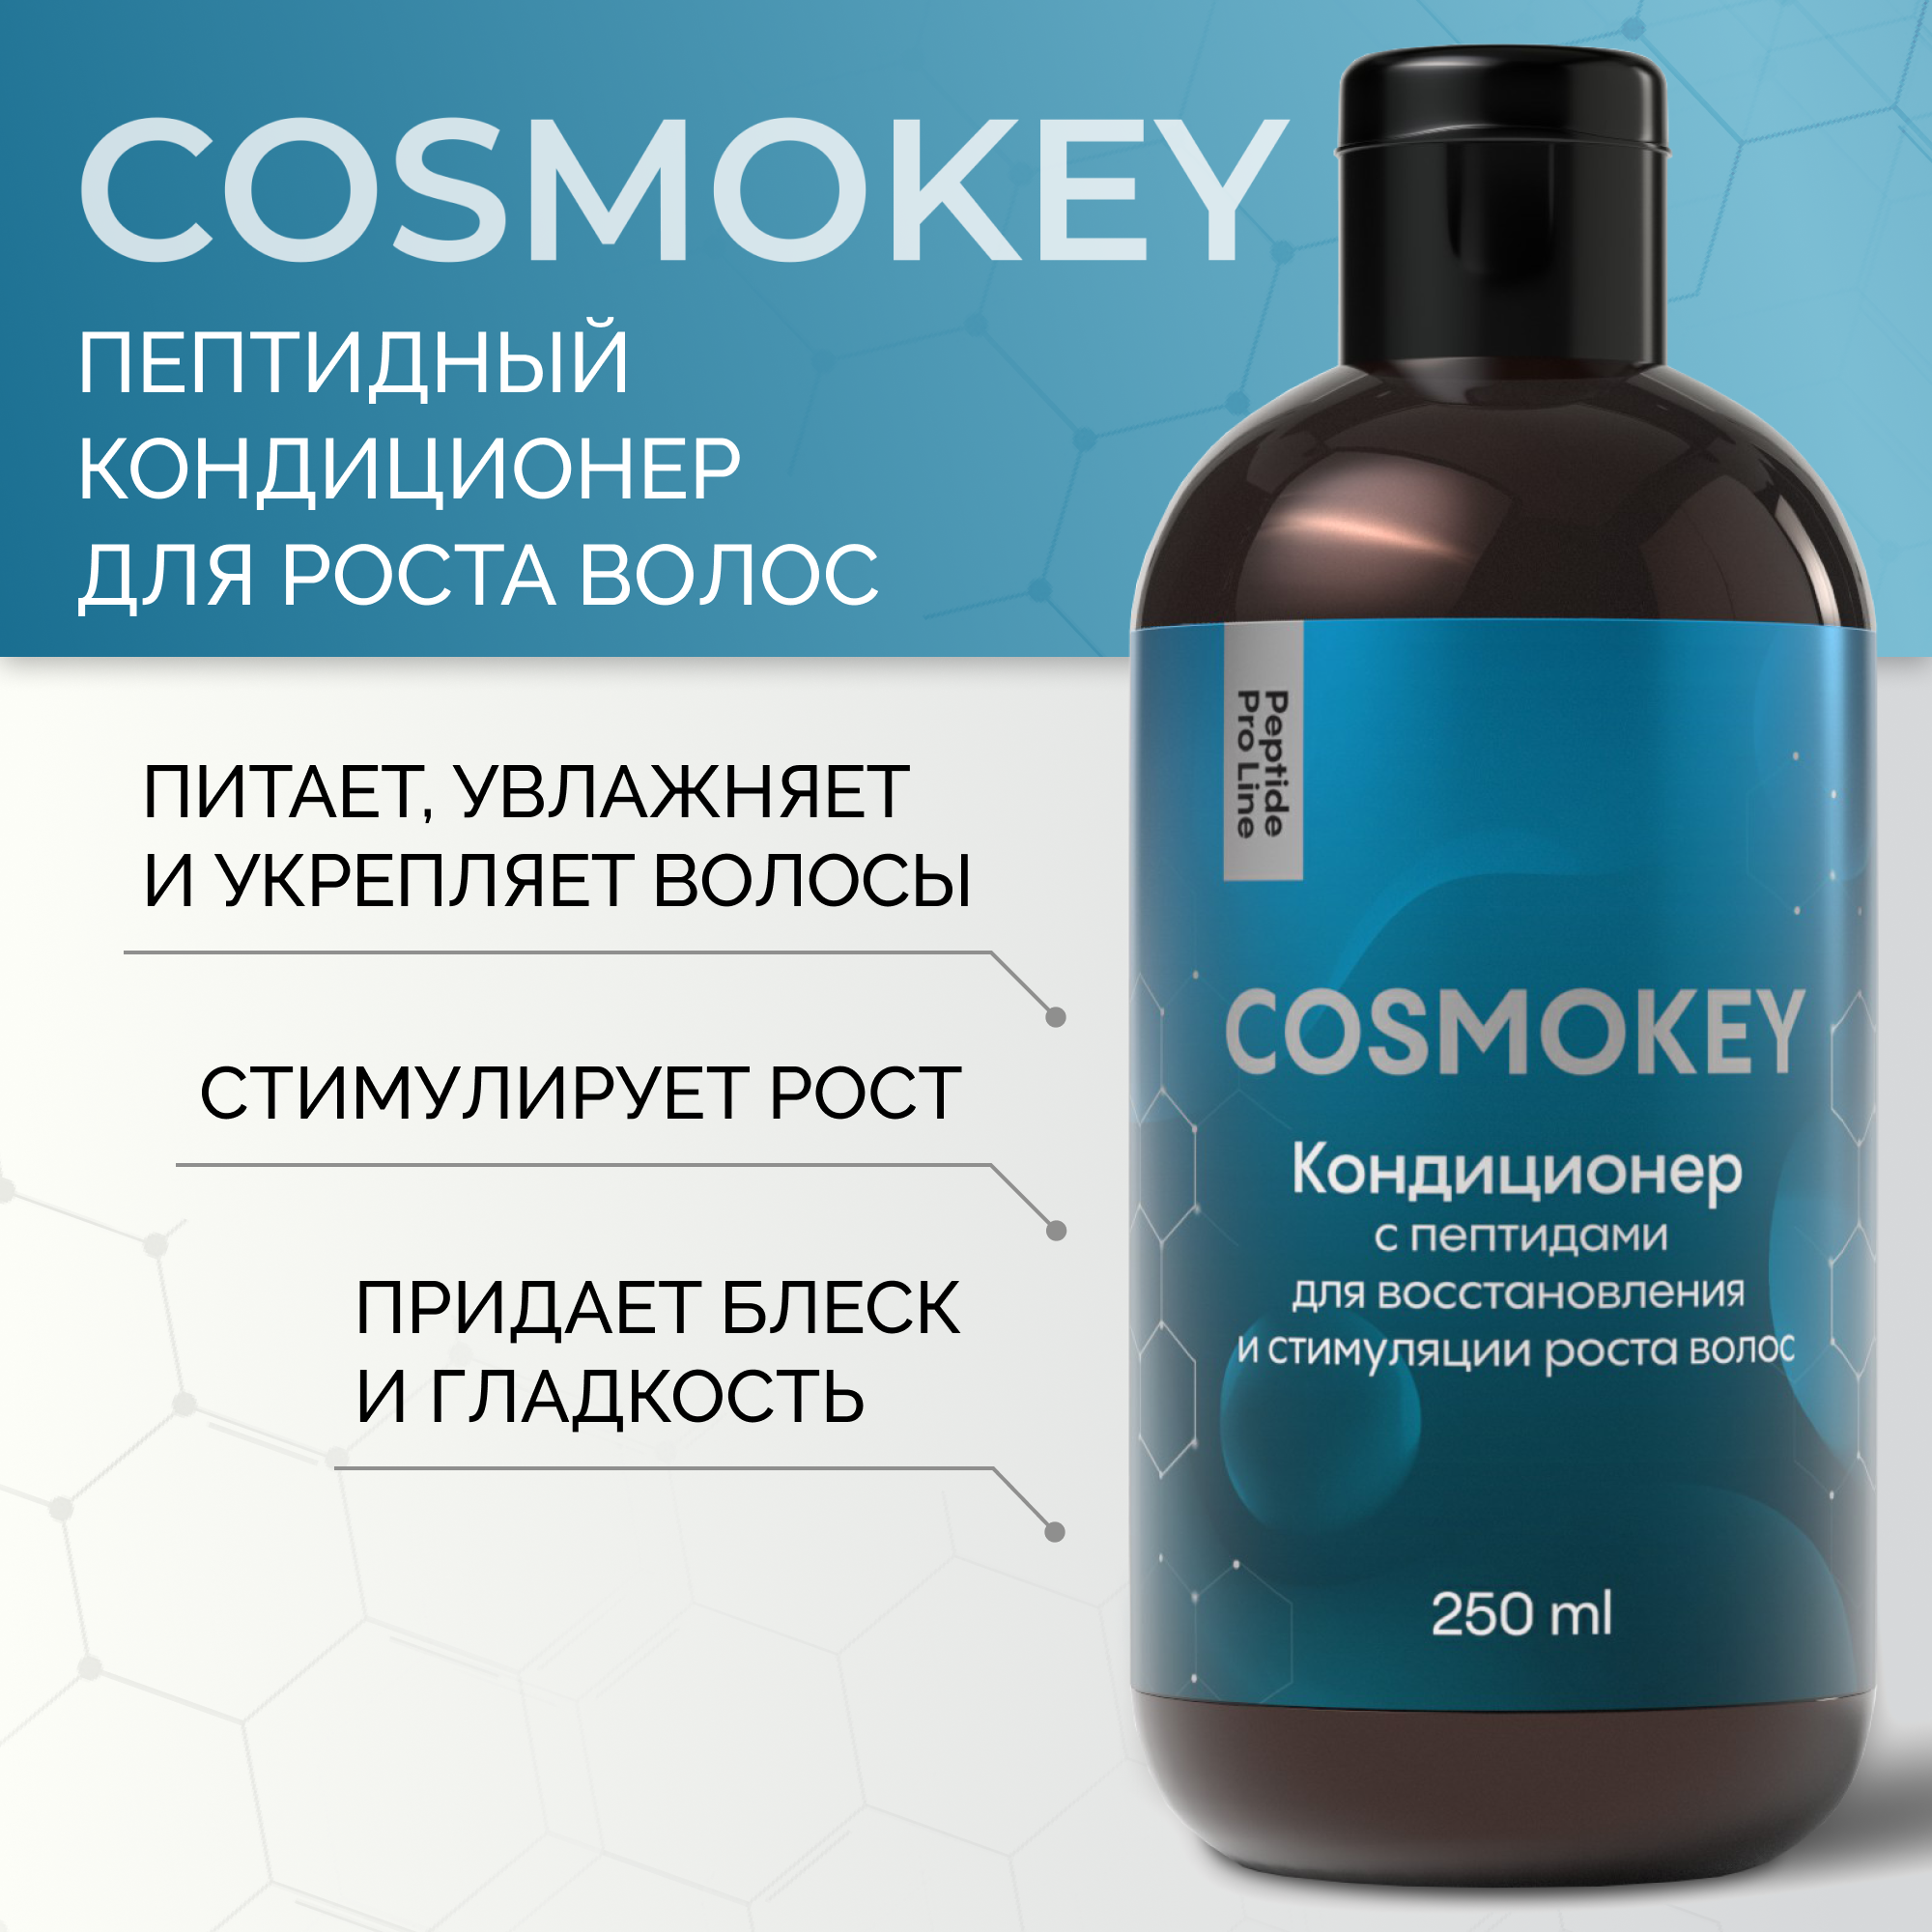 Кондиционер Cosmokey Космокей с пептидами для восстановления роста волос 250 мл lavidoux кондиционер для роста волос hair growth